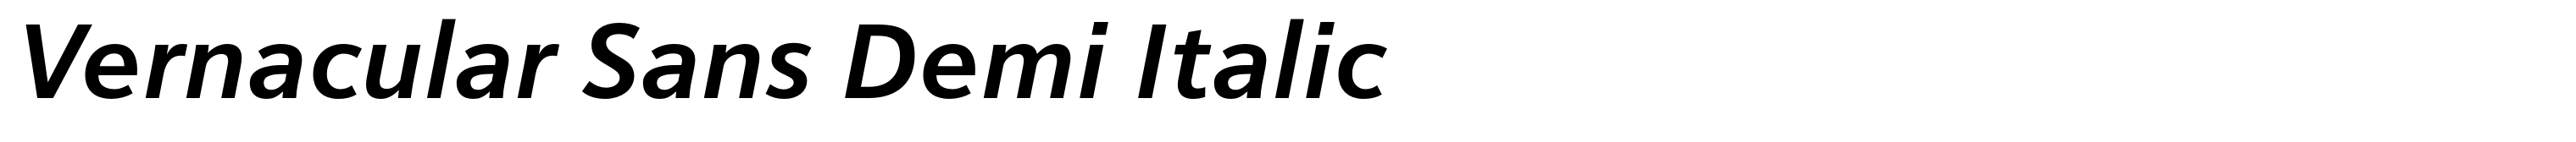 Vernacular Sans Demi Italic